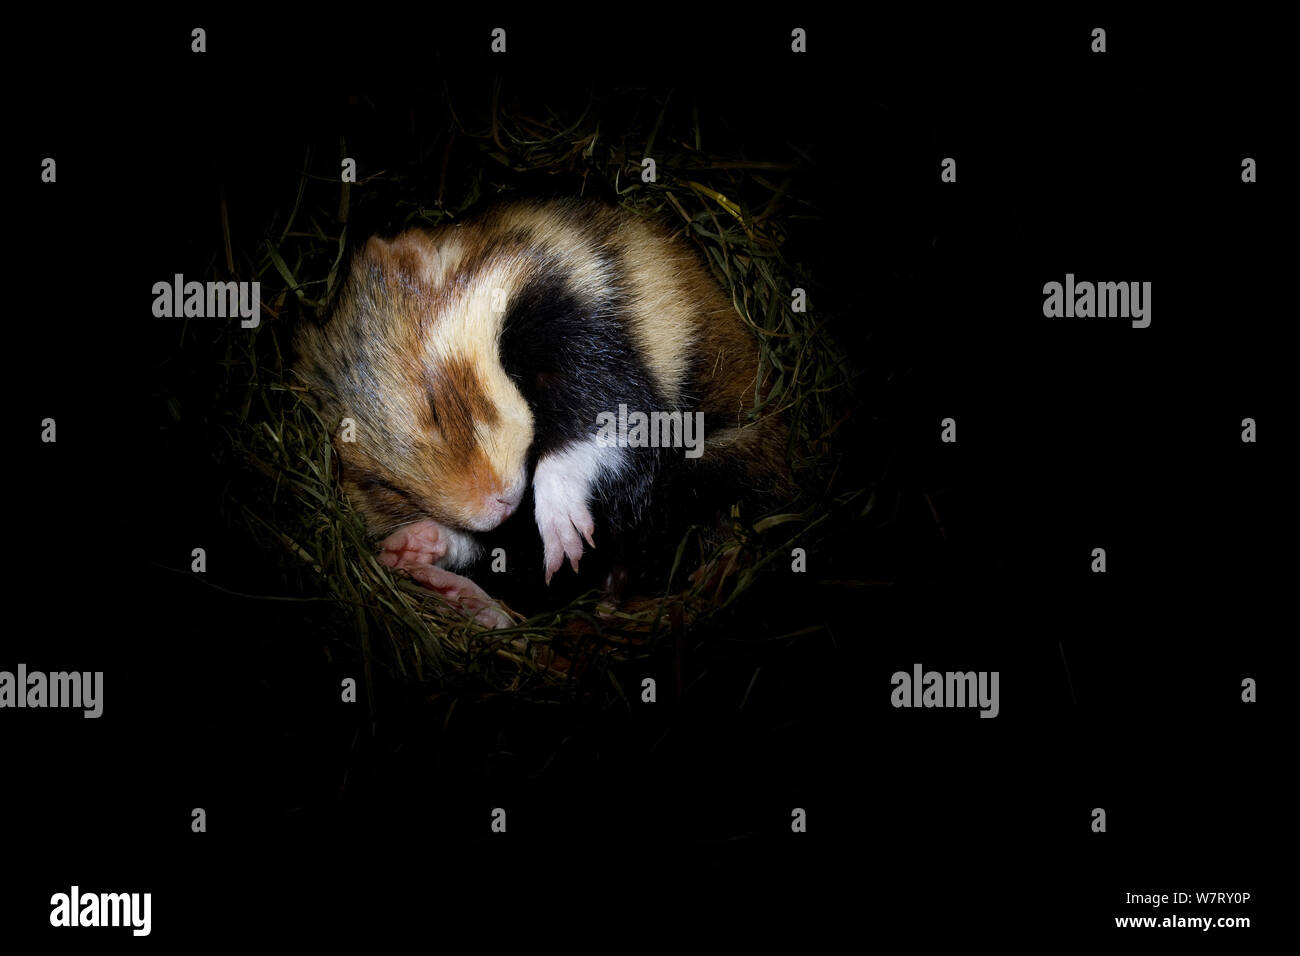 Gemeinsame Hamster (Cricetus cricetus) hibernating Underground im Fuchsbau/Nest, Deutschland, gefangen. Stockfoto